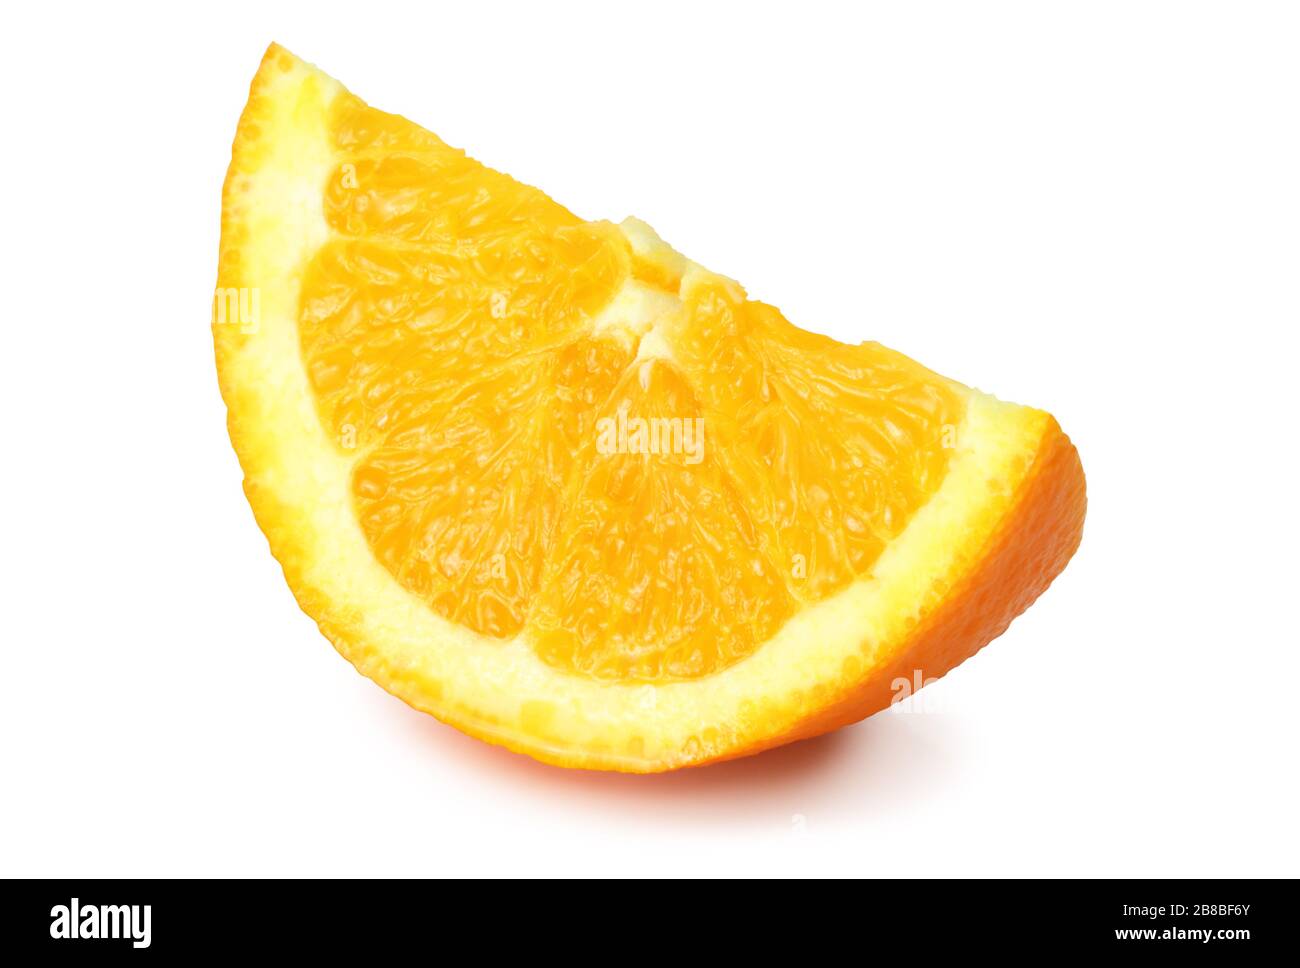 Un pedazo de naranja (Citrus) aislado sobre fondo blanco, incluyendo la ruta de recorte sin sombra. Alemania. Ein Apfelsinenstück (Zitrusfrucht) isoliert Foto de stock